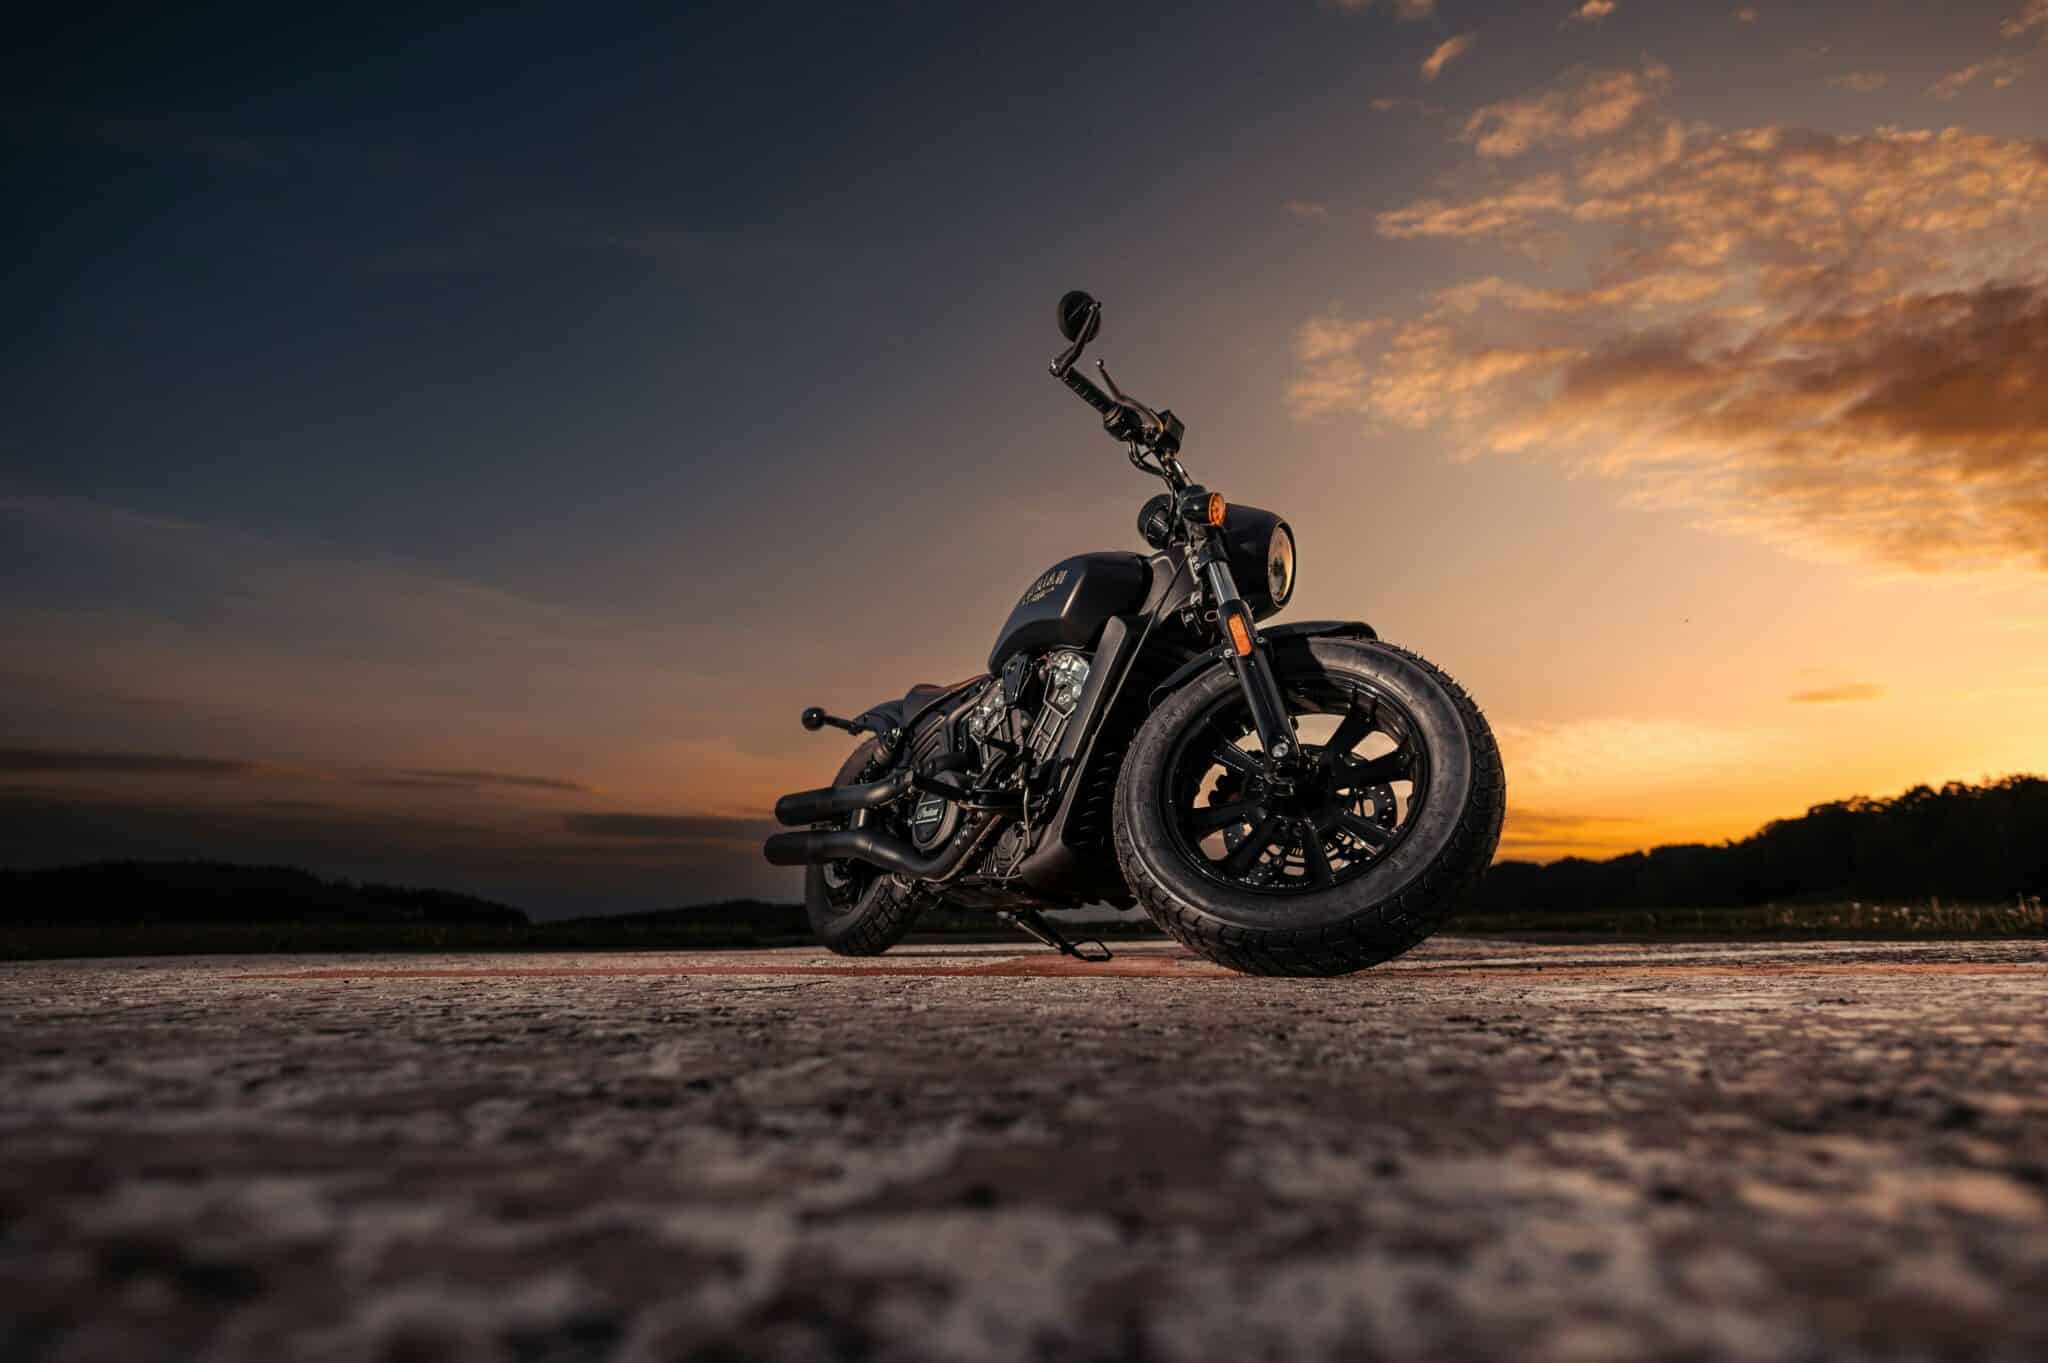 découvrez la légende de la marque indian motorcycle, ses modèles emblématiques et son histoire riche en passion pour la moto depuis plus d'un siècle.